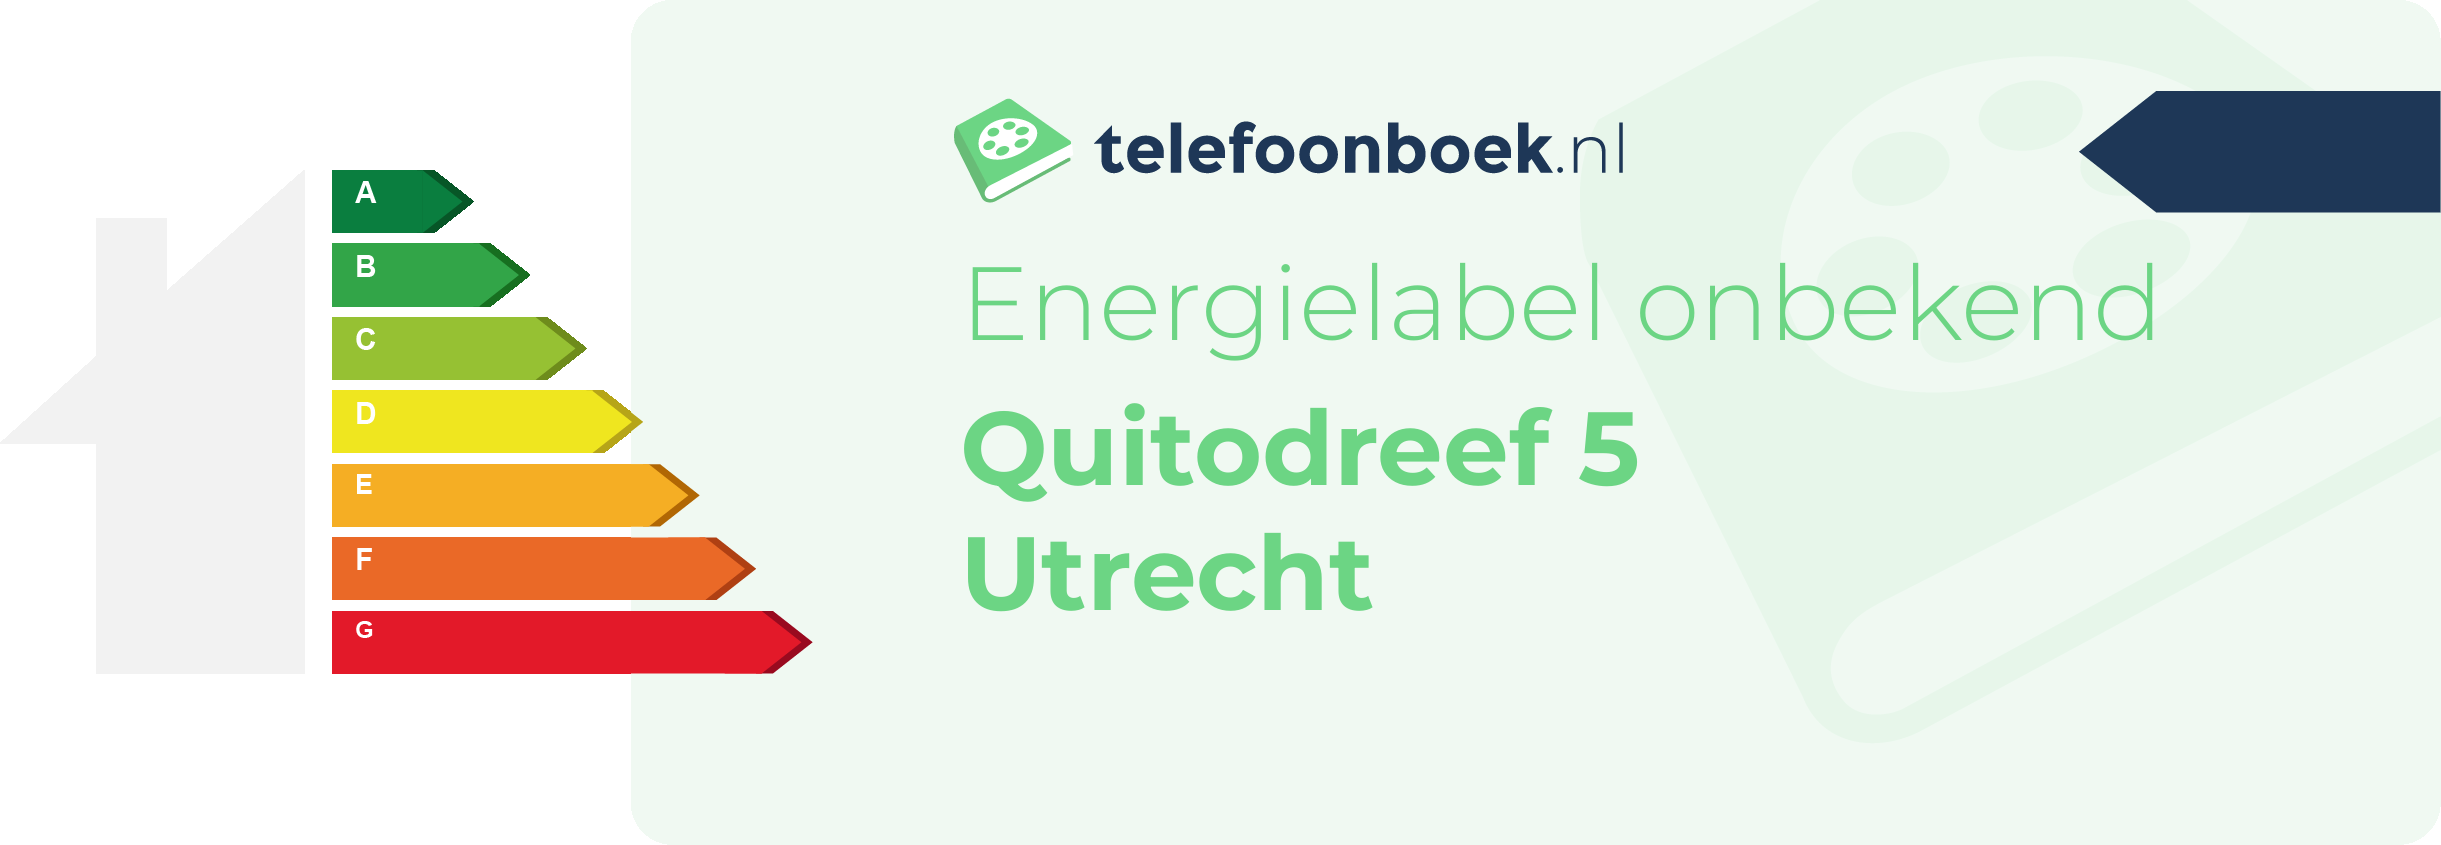 Energielabel Quitodreef 5 Utrecht